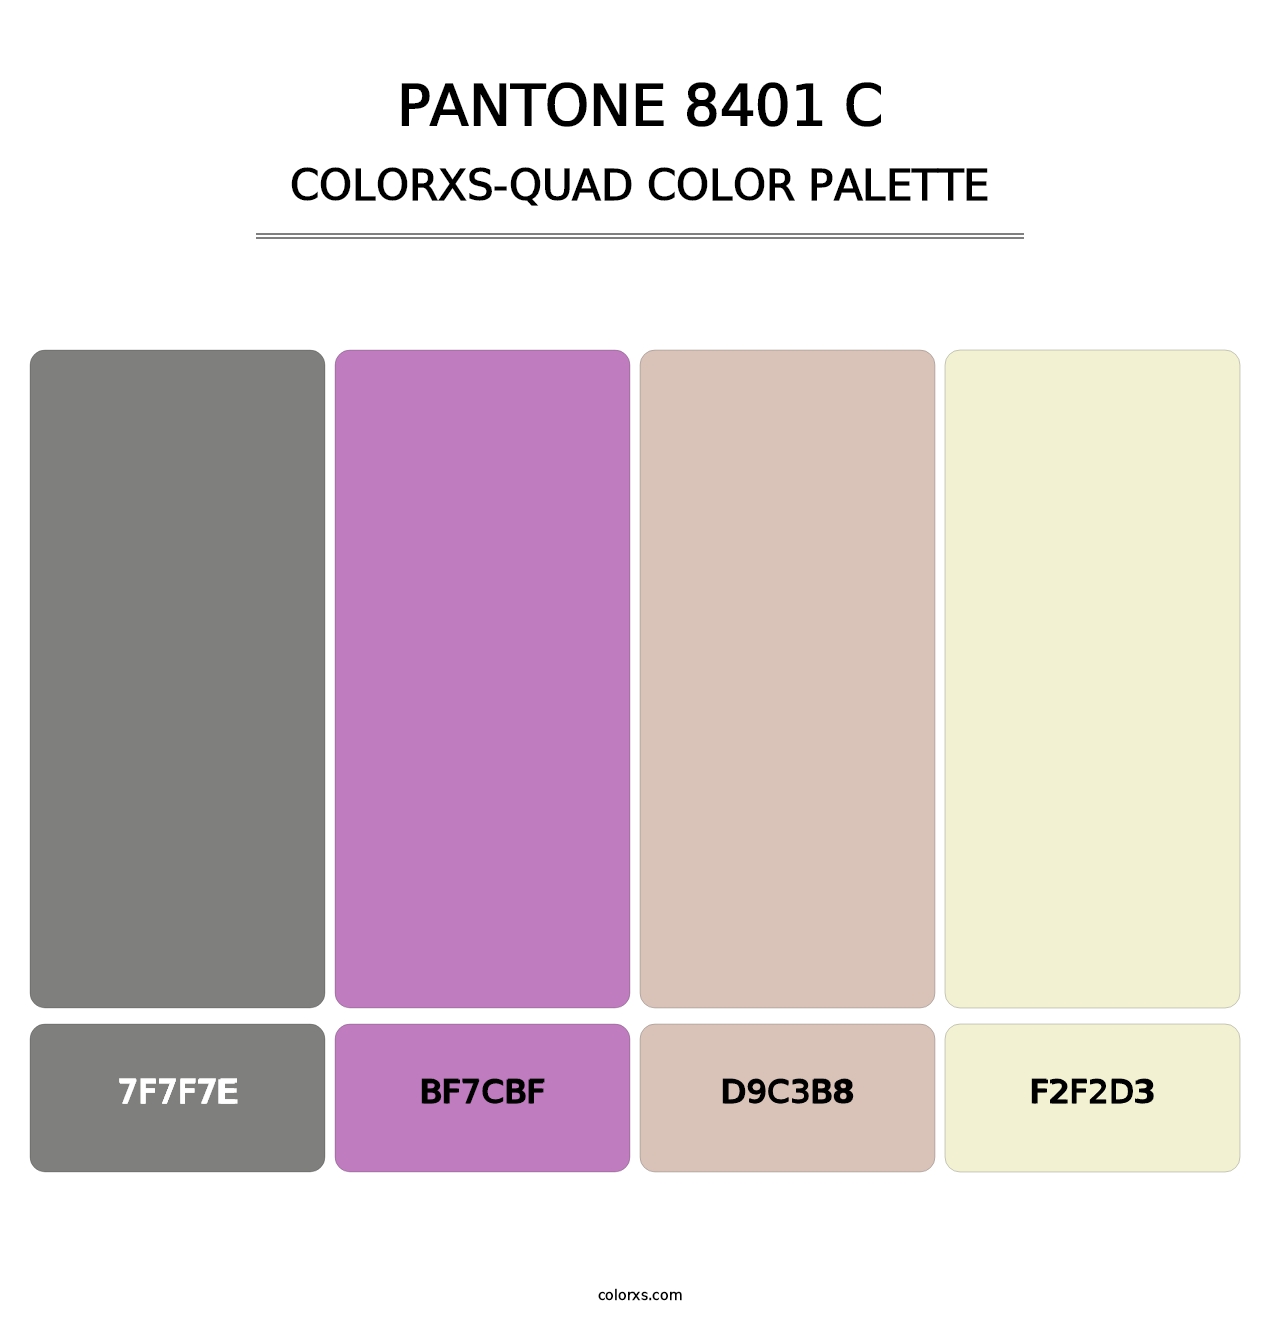 PANTONE 8401 C - Colorxs Quad Palette